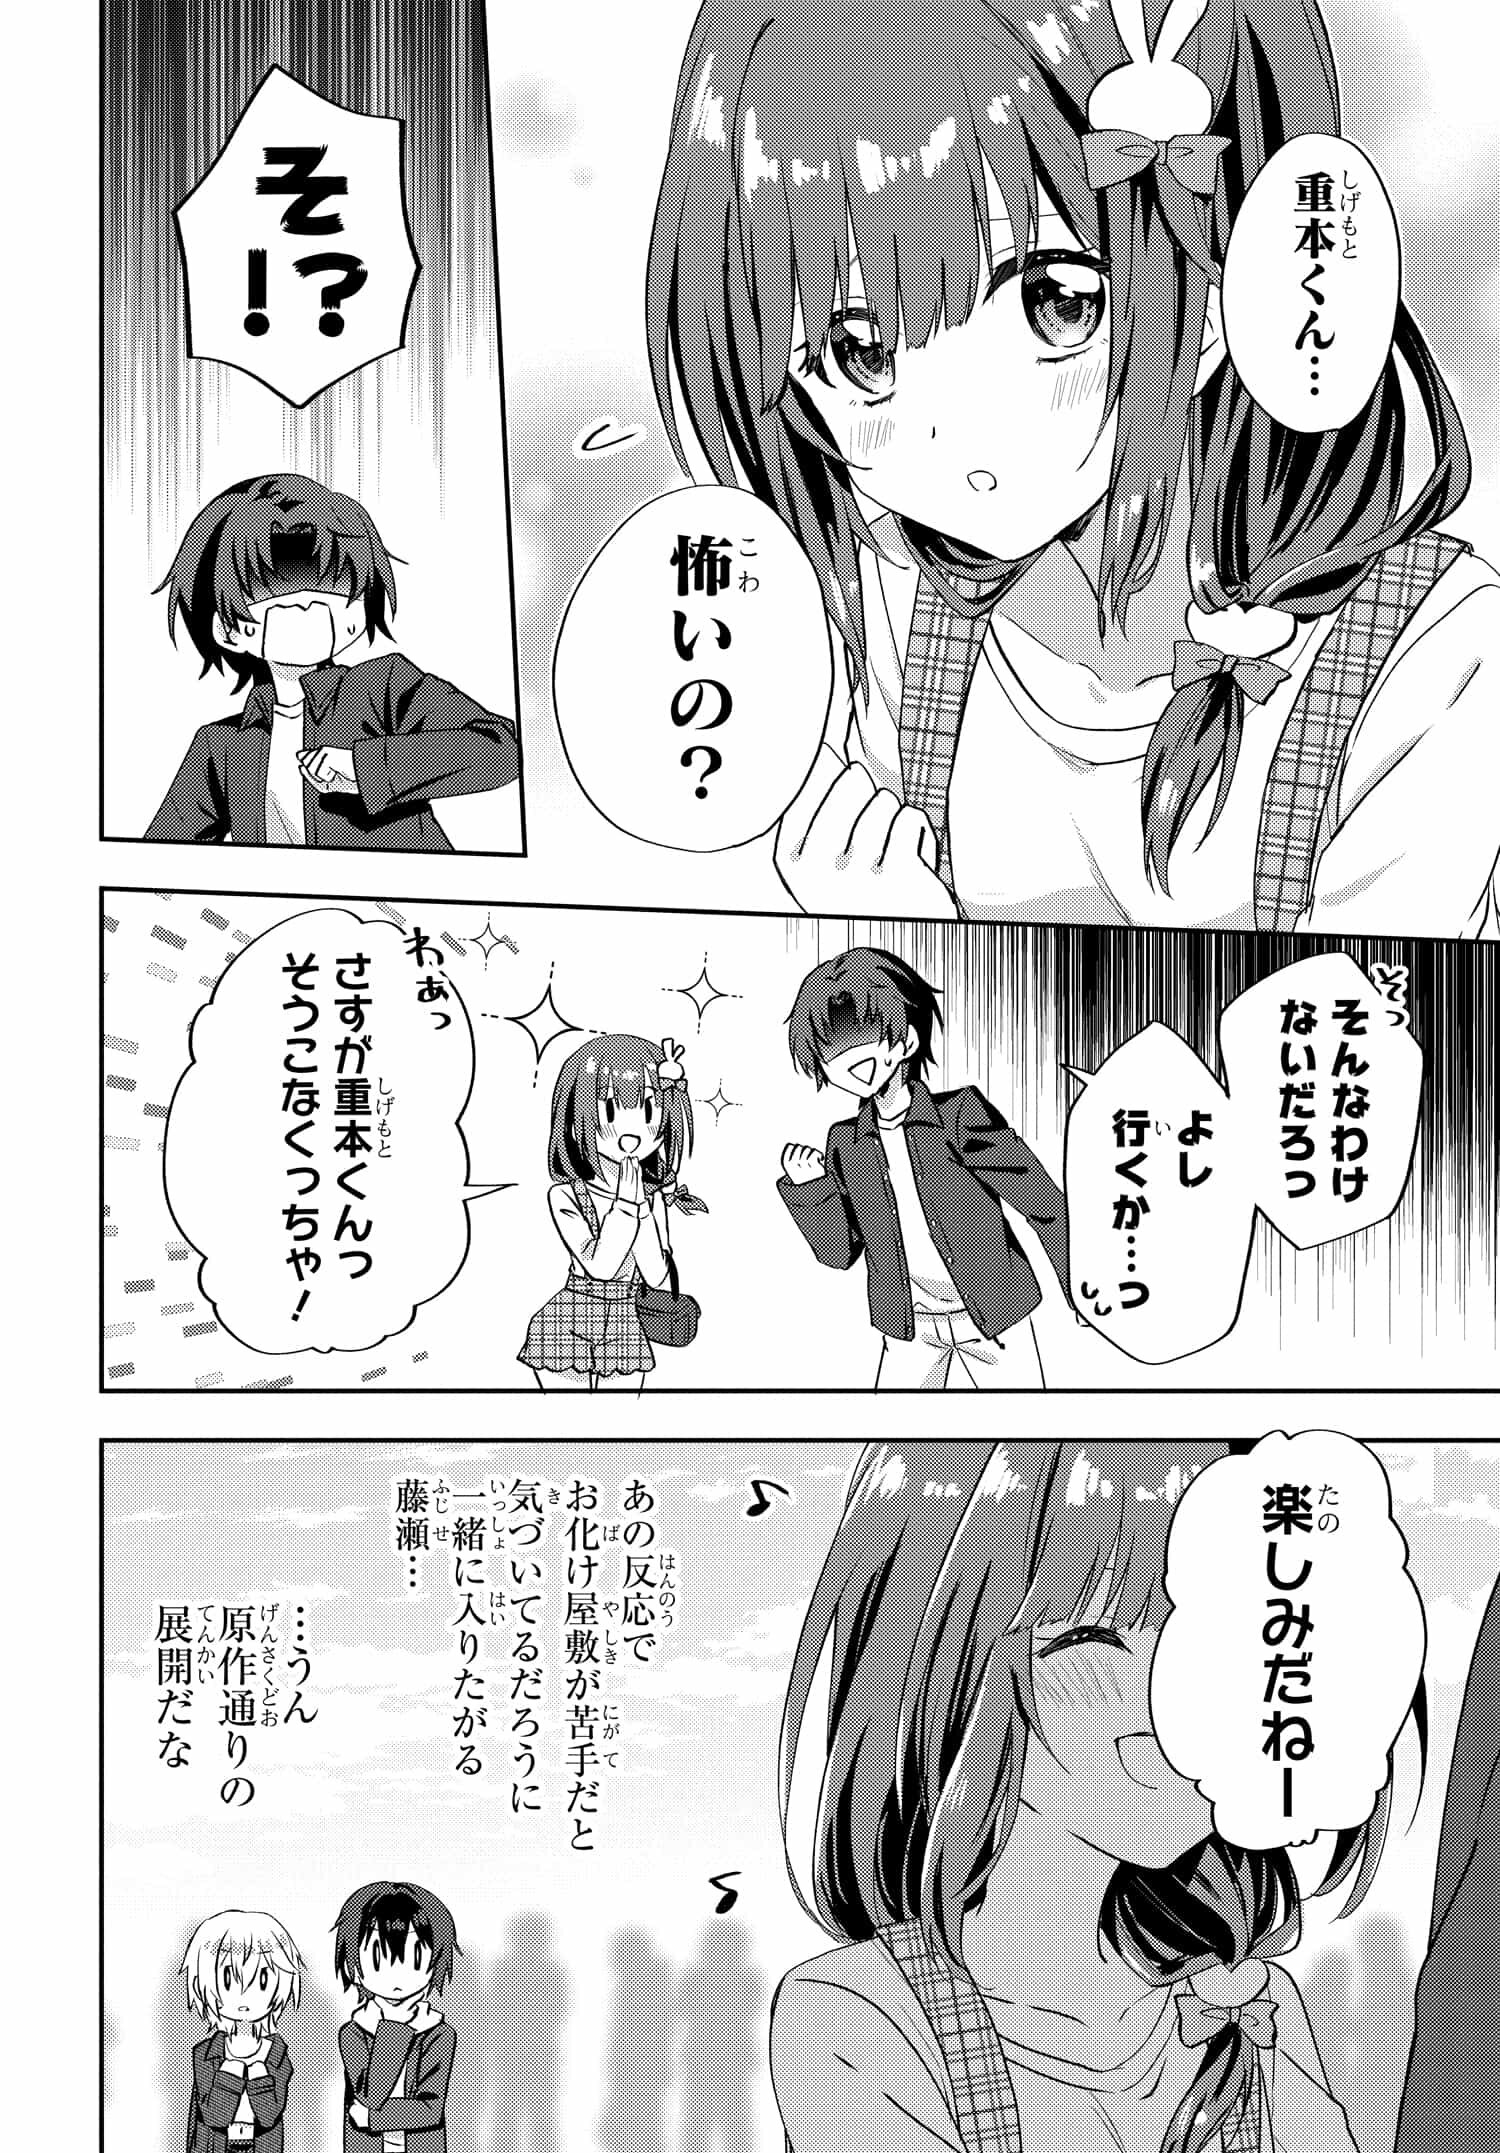 Romcom Manga ni Haitte Shimatta no de, Oshi no Make Heroine wo Zenryoku de Shiawase ni suru - Chapter 7.2 - Page 3